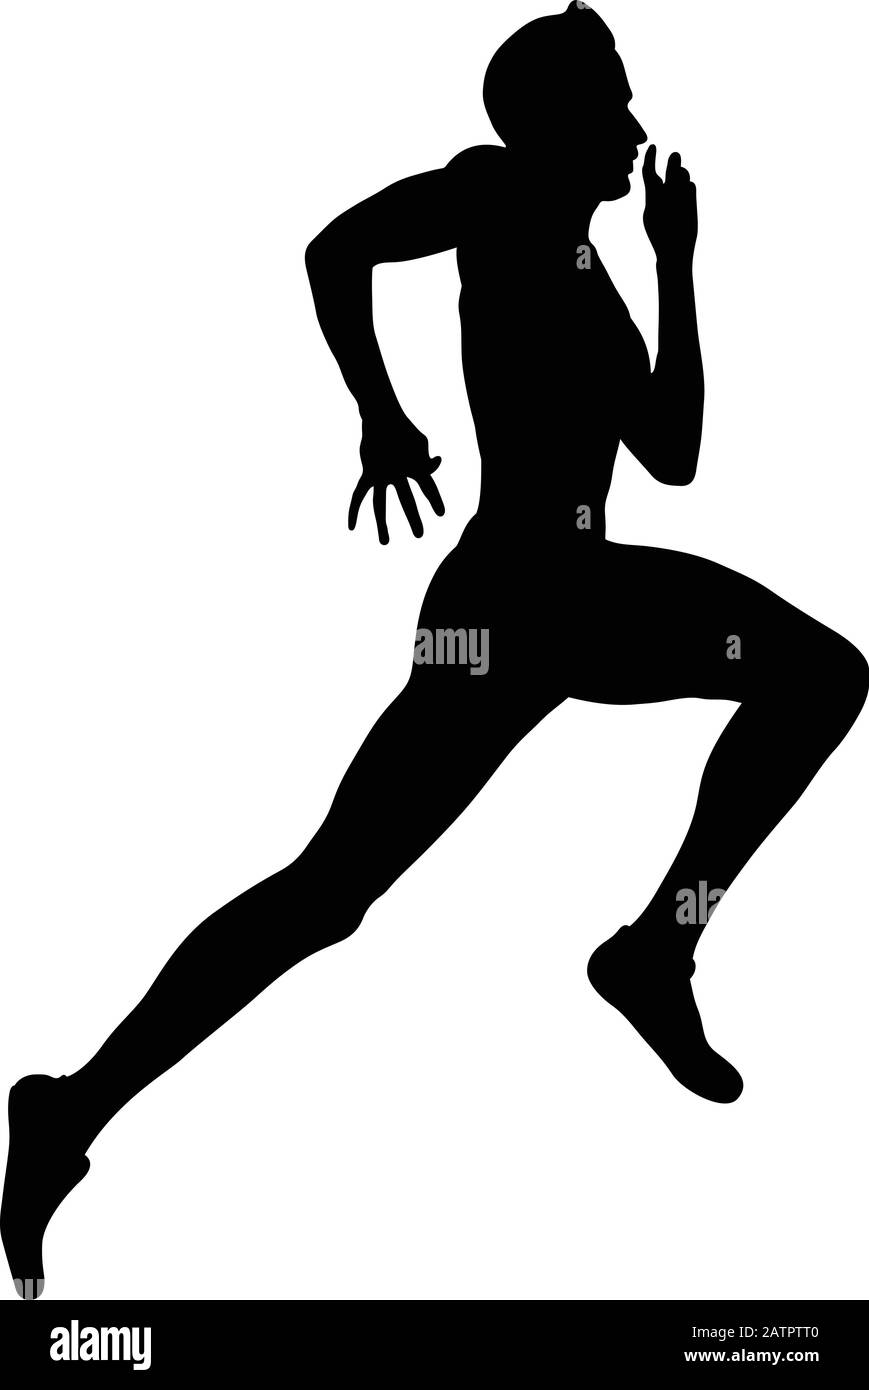 silueta negra de la pista de atletismo de atleta de sprinter para hombre Ilustración del Vector